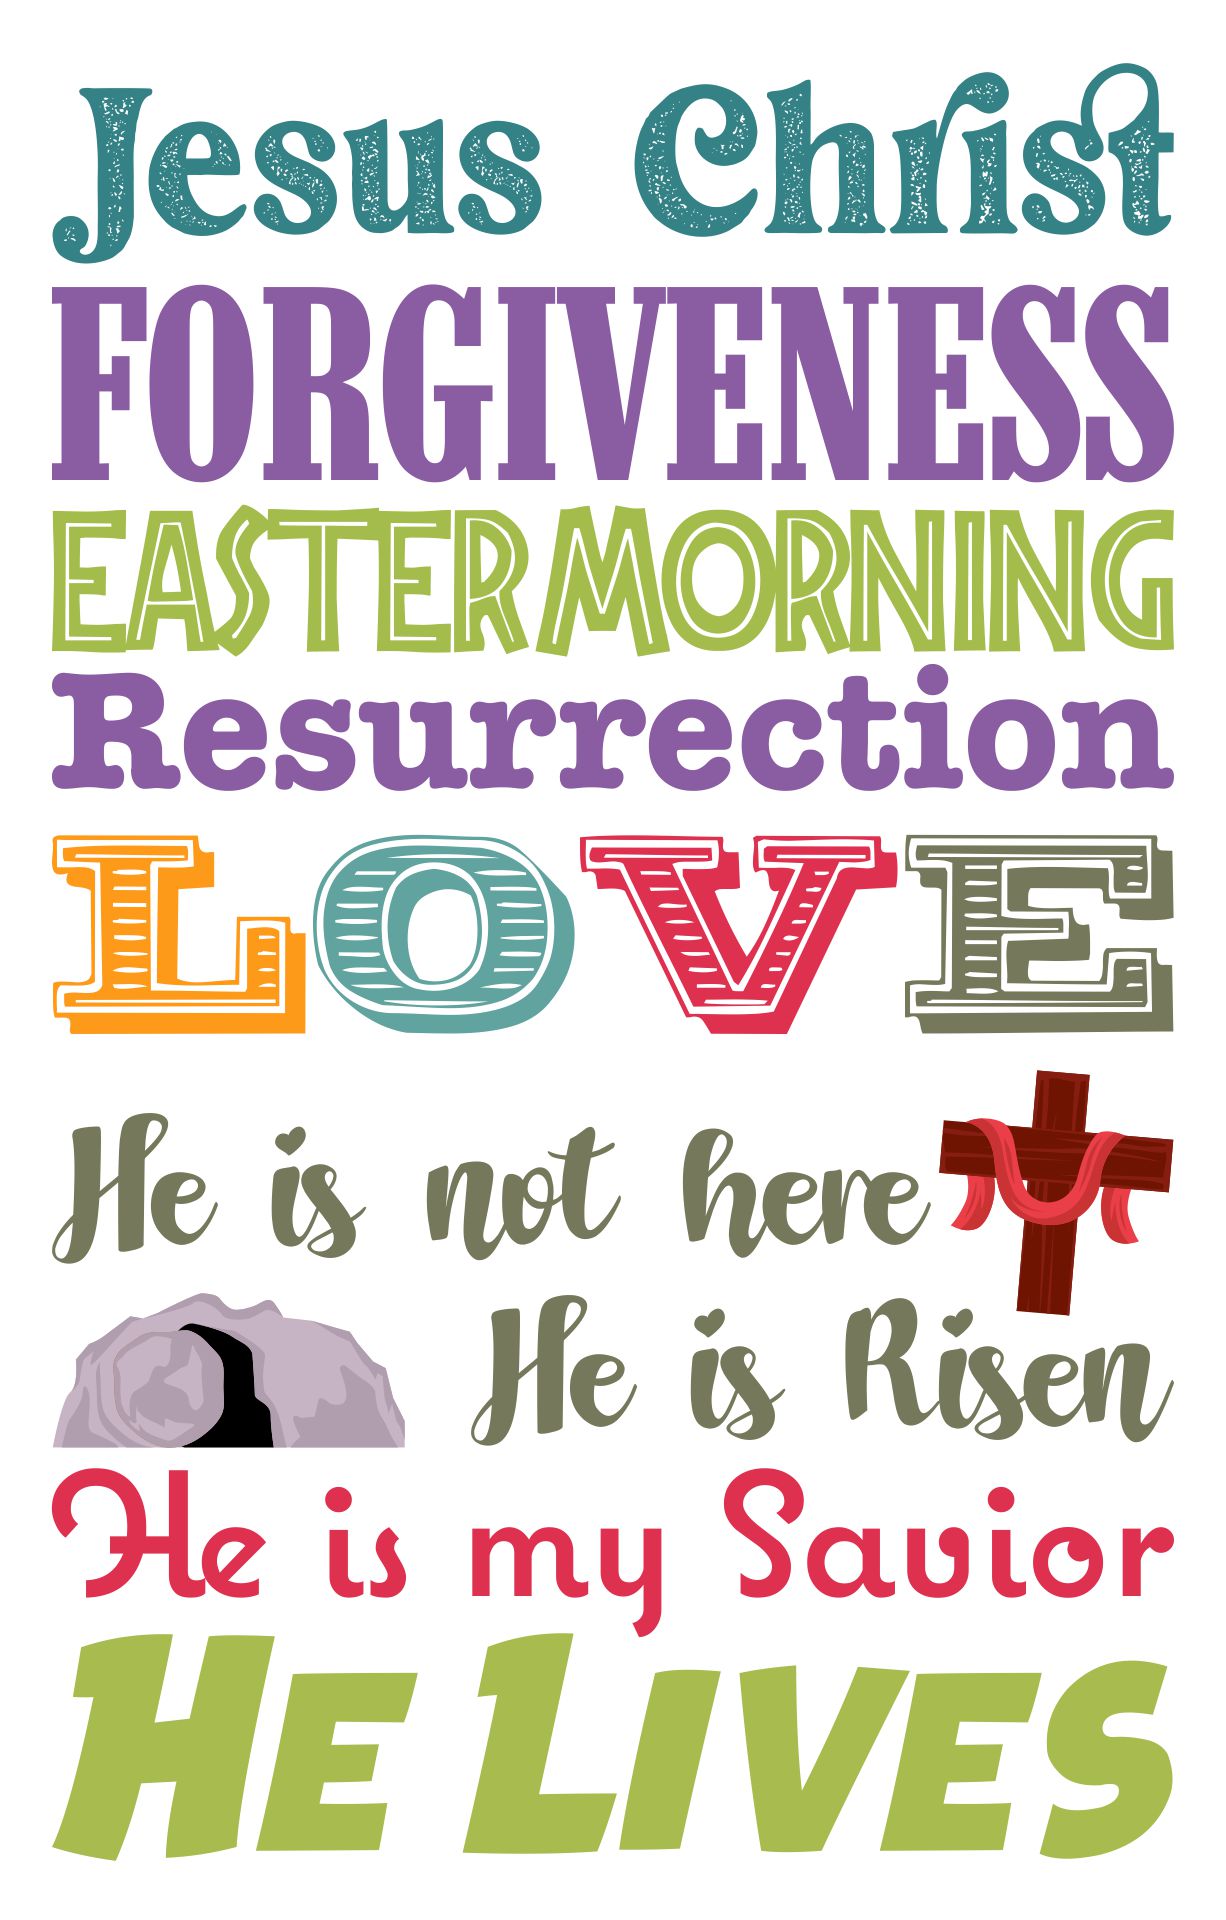 Printable Religious Easter Subway Art